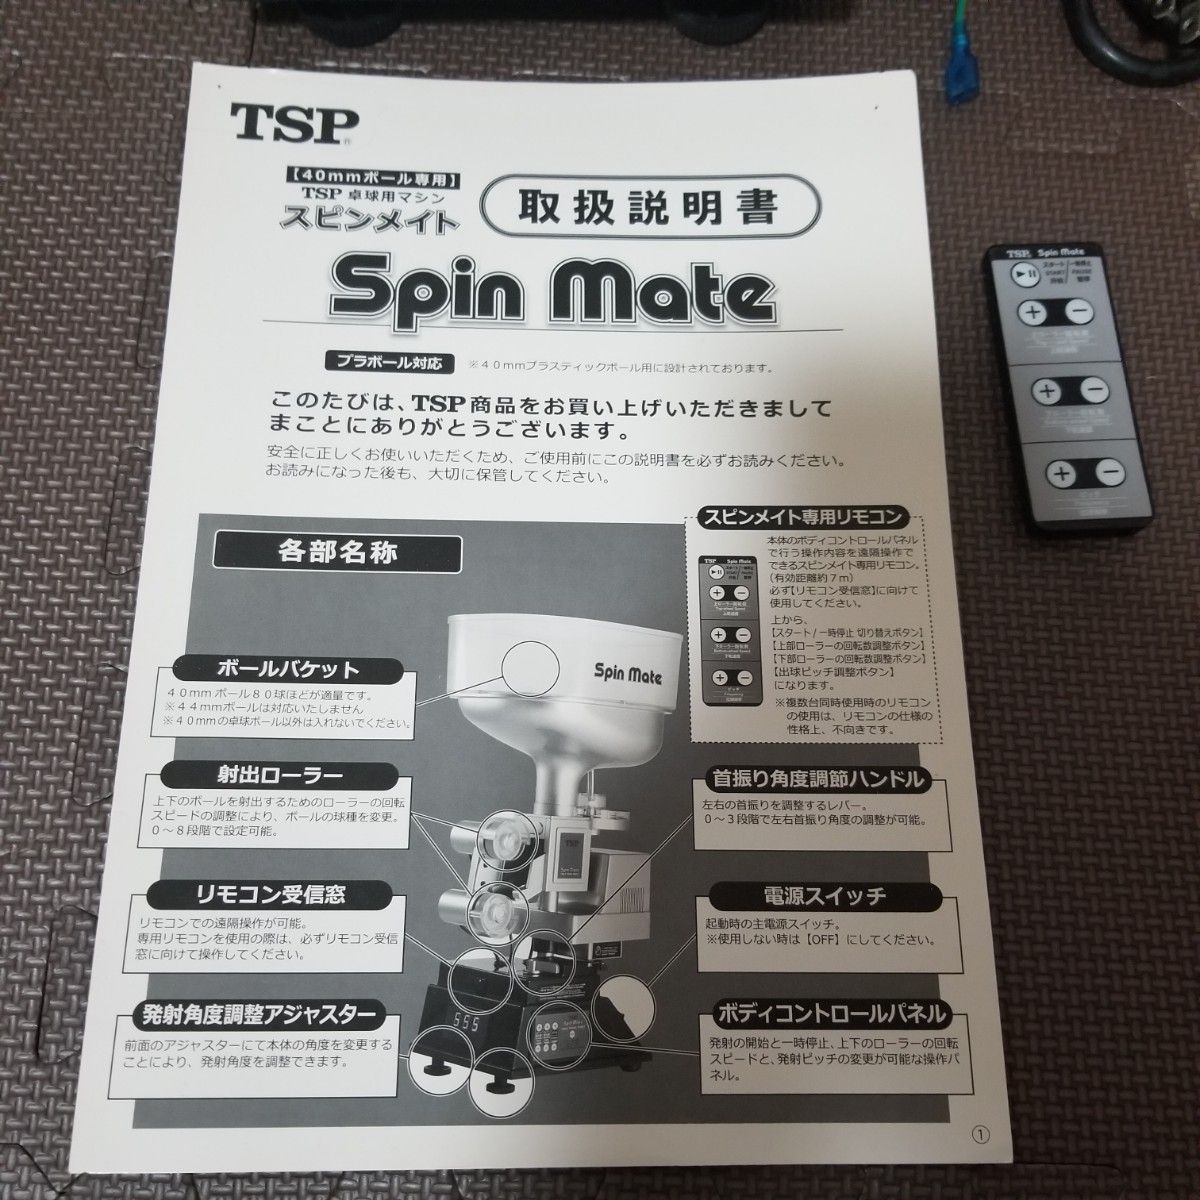 TSP Spin mate スピンメイト 卓球マシン 早い者勝ち - 卓球